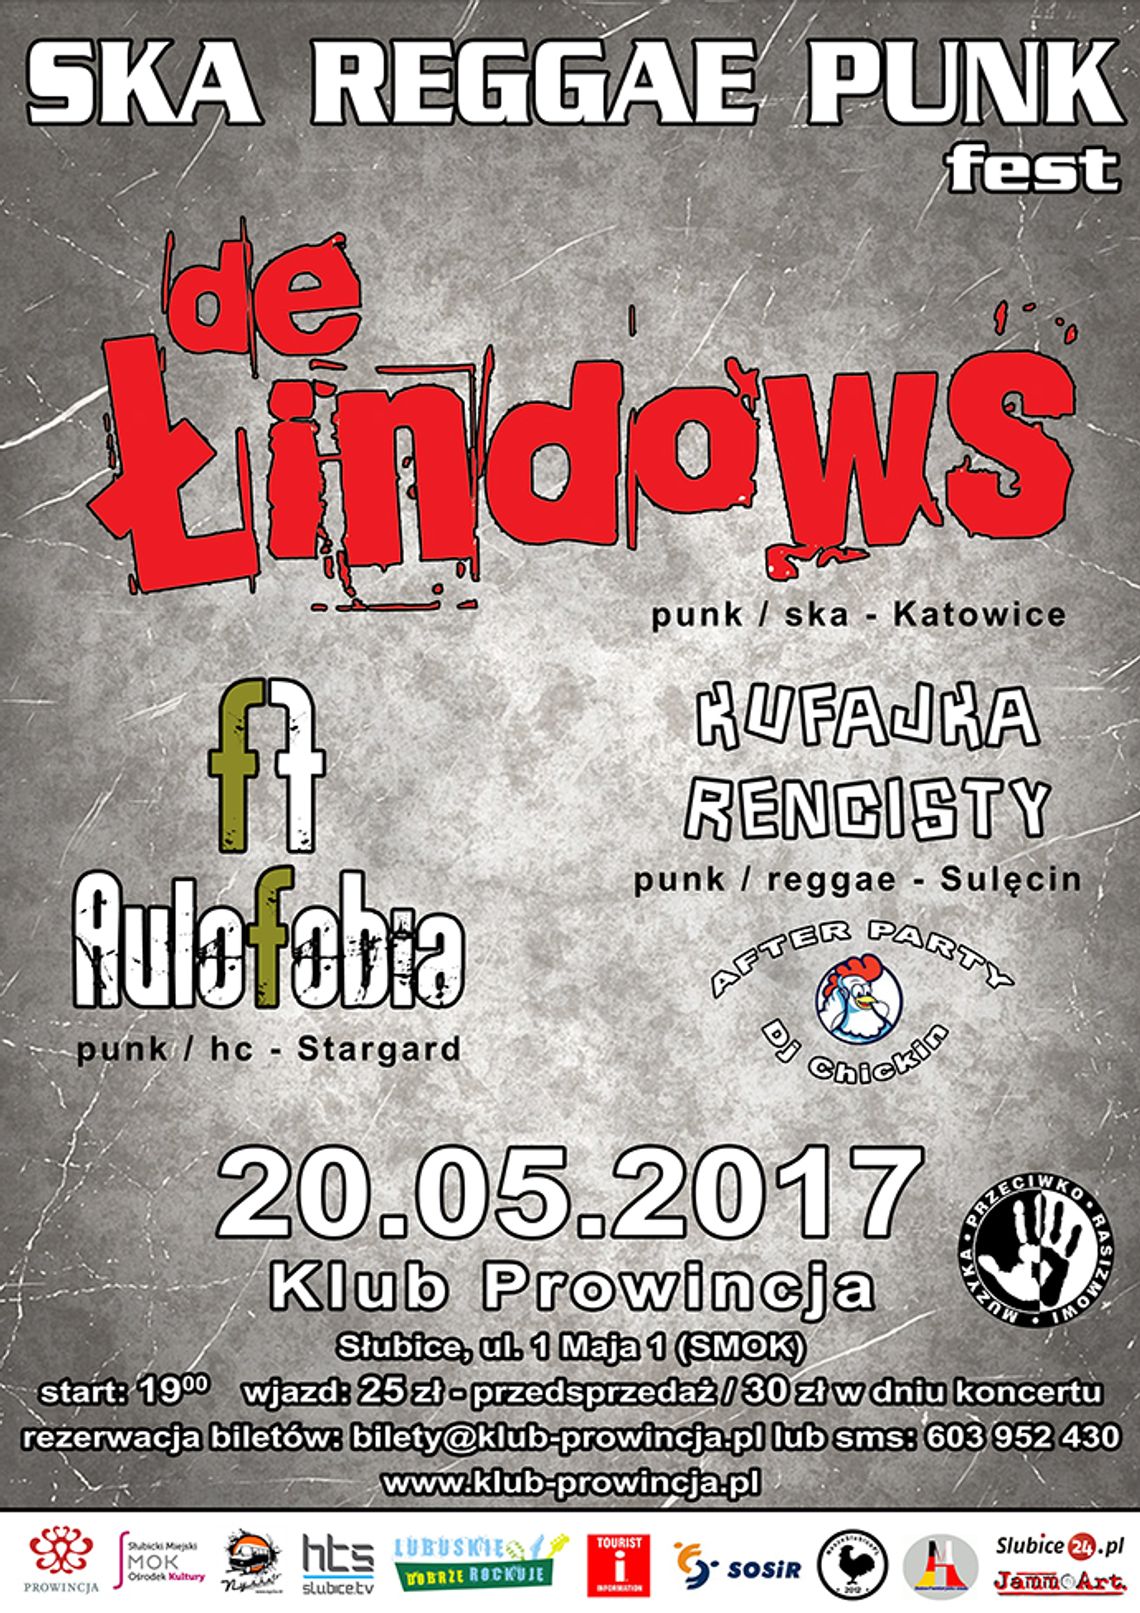 SKA Reggae Punk Fest - zagrają: De Łindows, Aulofobia, Kufajka Rencisty